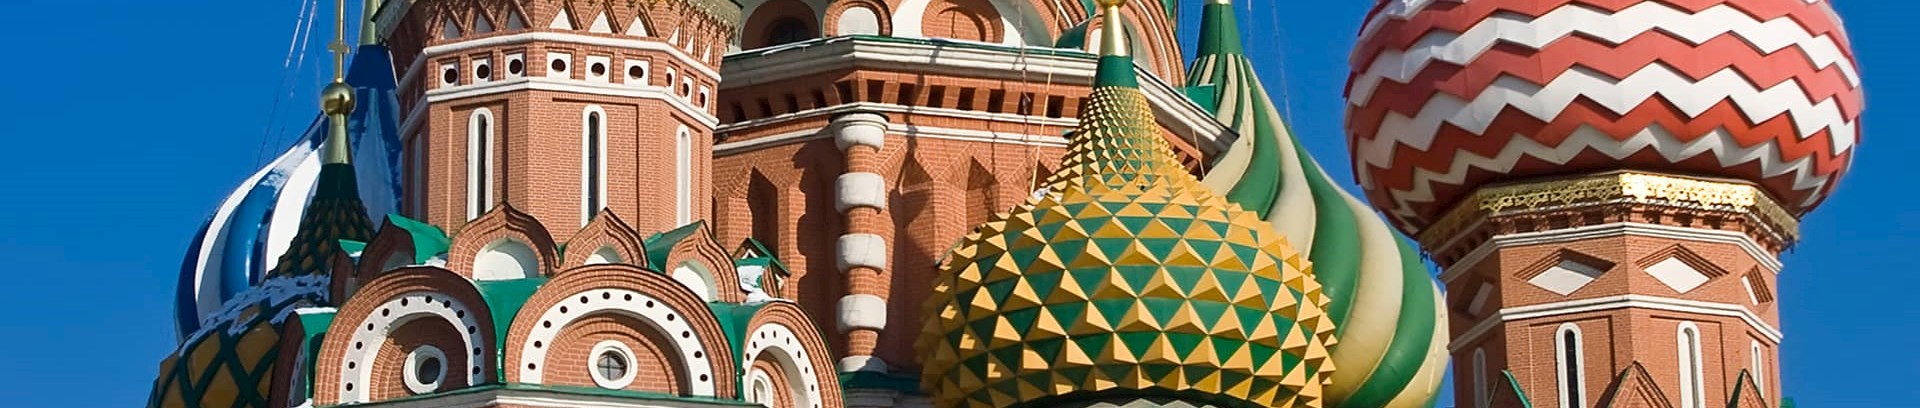 Billede af russisk kirke med løgkupelspir